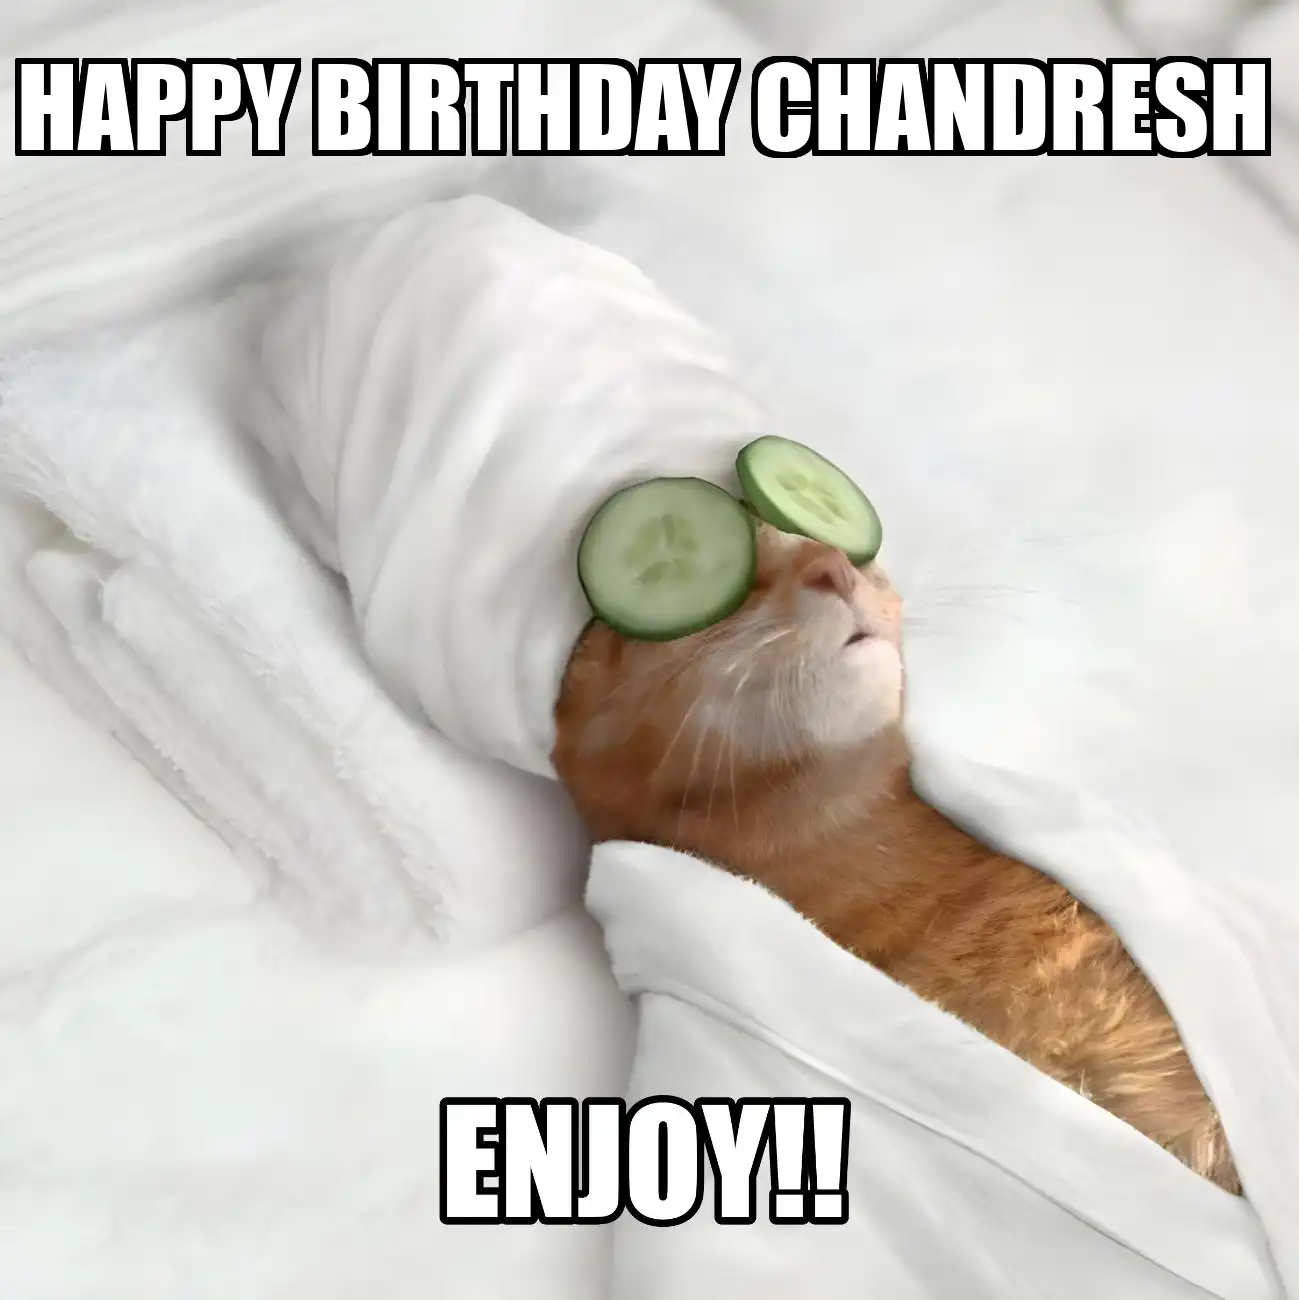 Happy Birthday Chandresh Enjoy Cat Meme